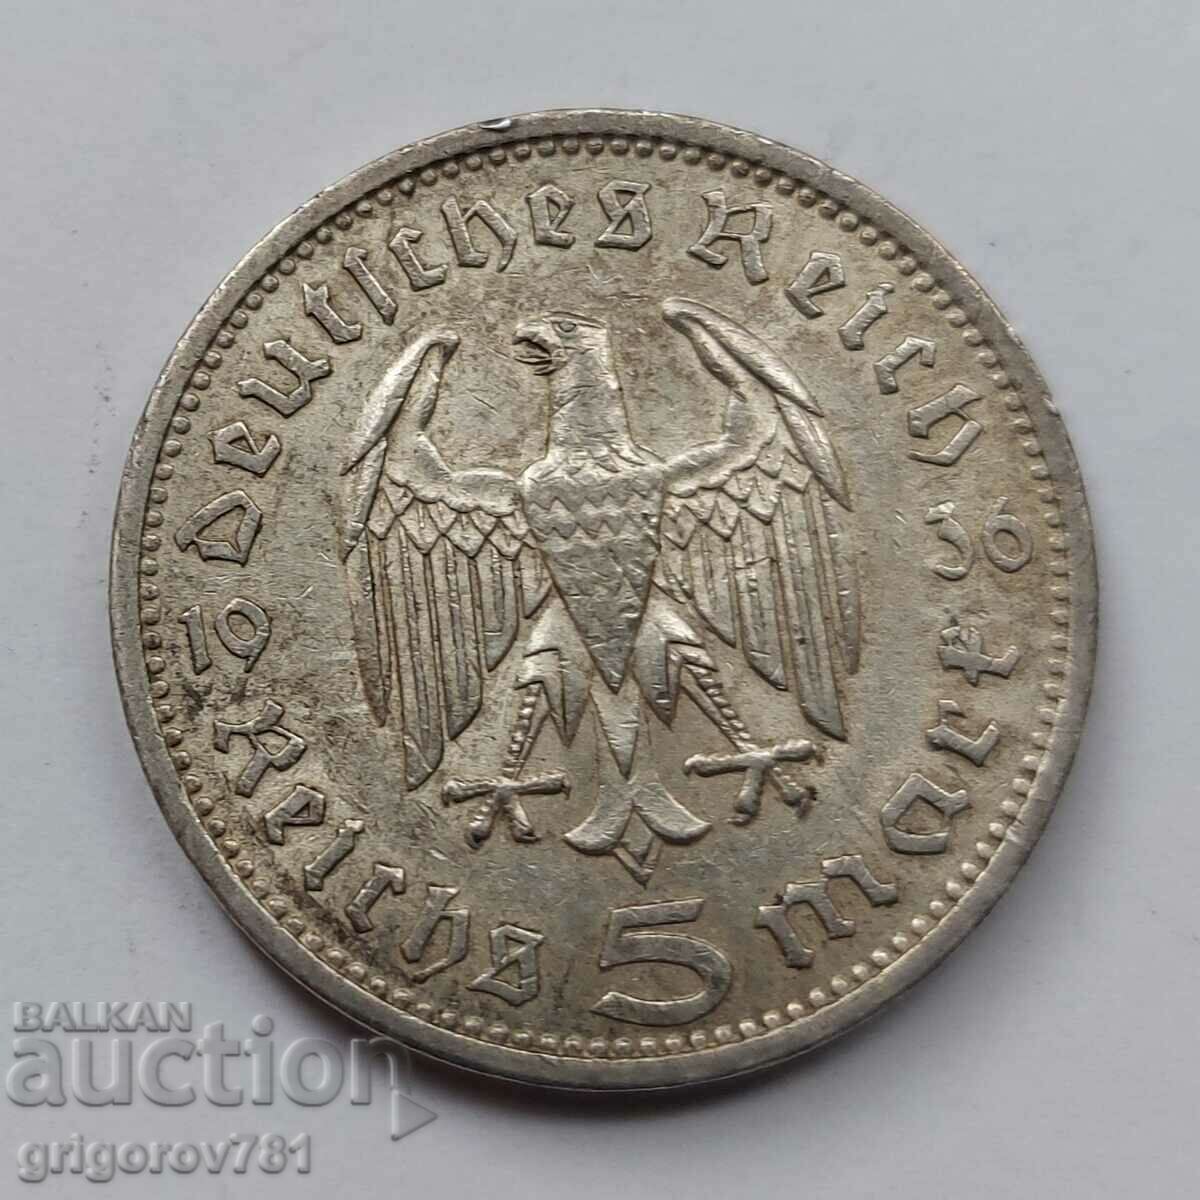 5 timbre argint Germania 1936 A III Reich monedă de argint №53